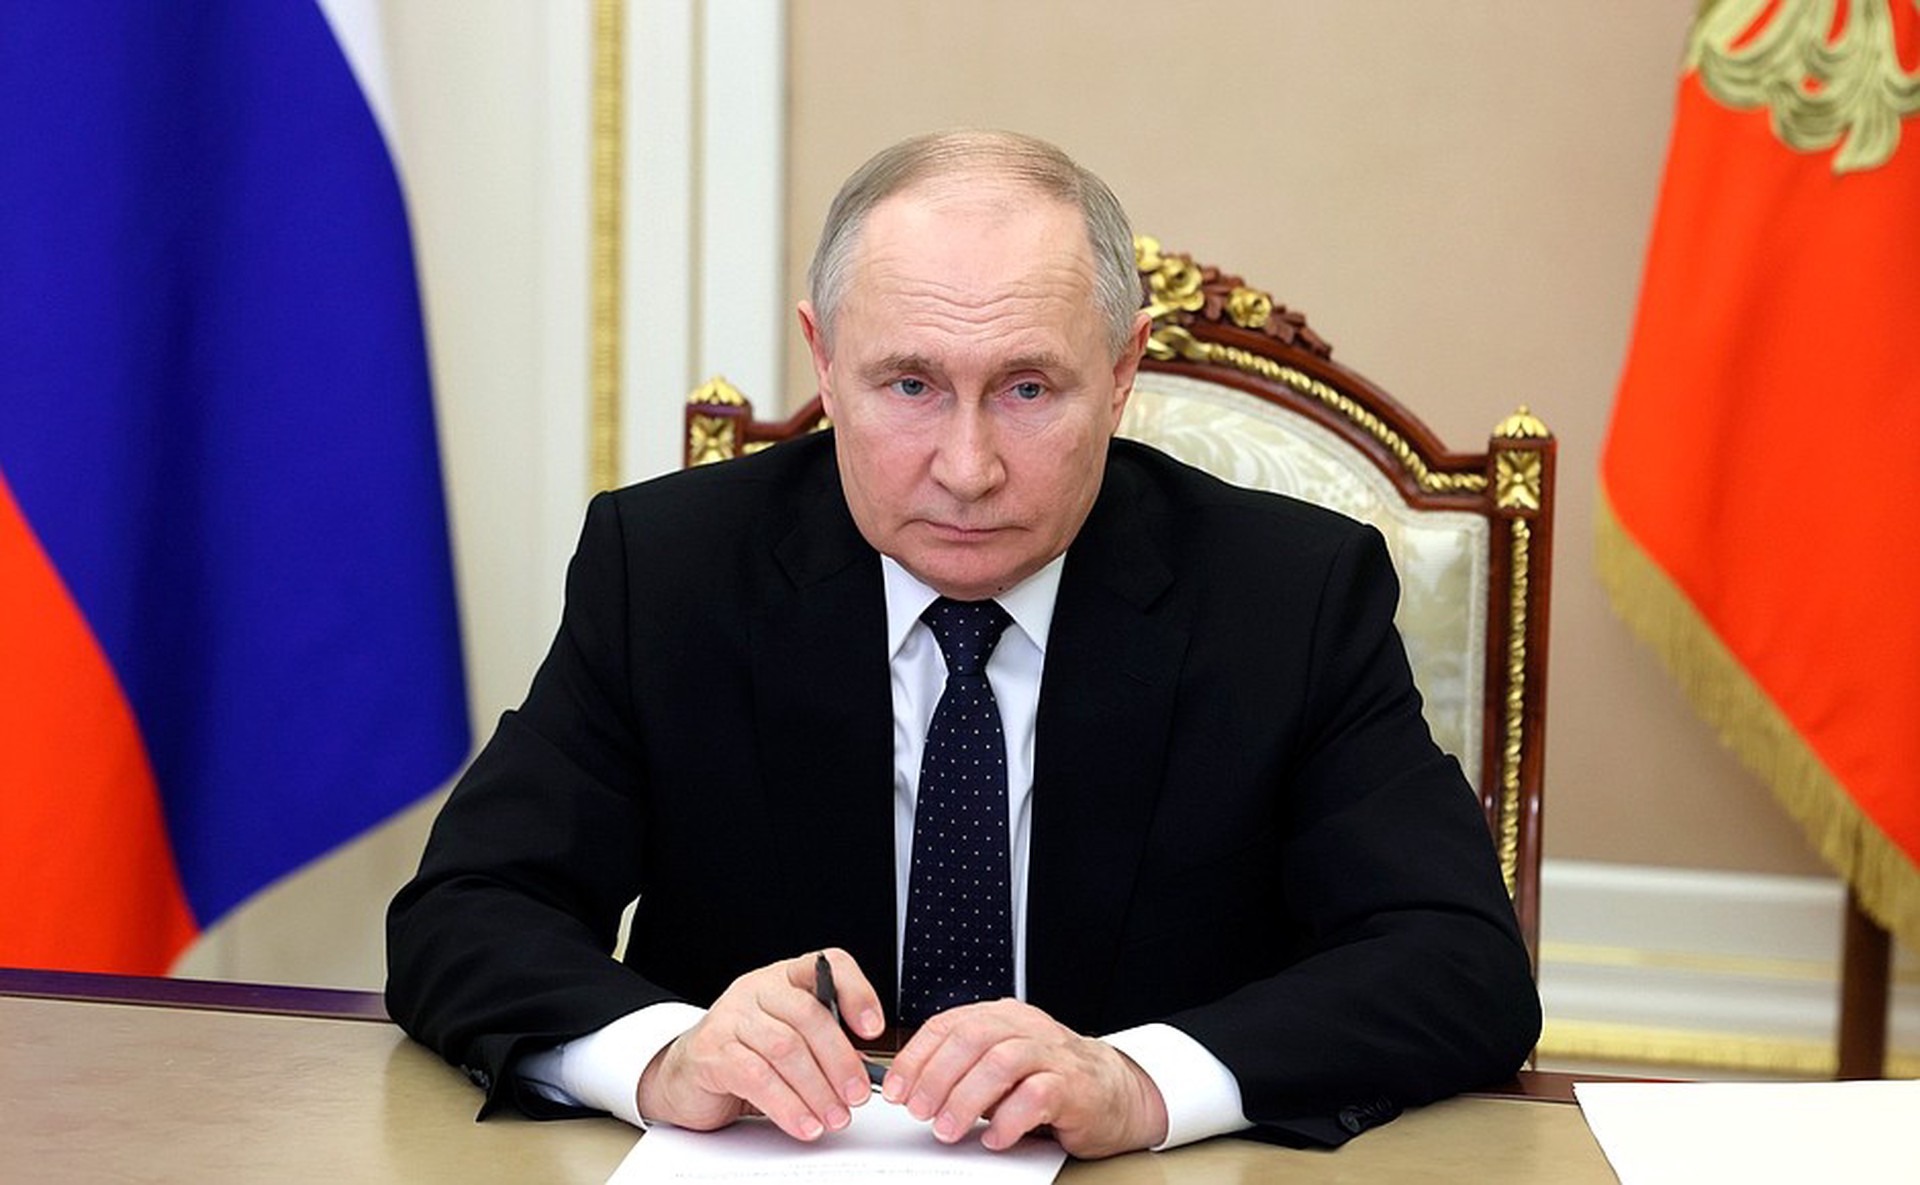 Стано: Посол ЕС в России не будет присутствовать на инаугурации Путина